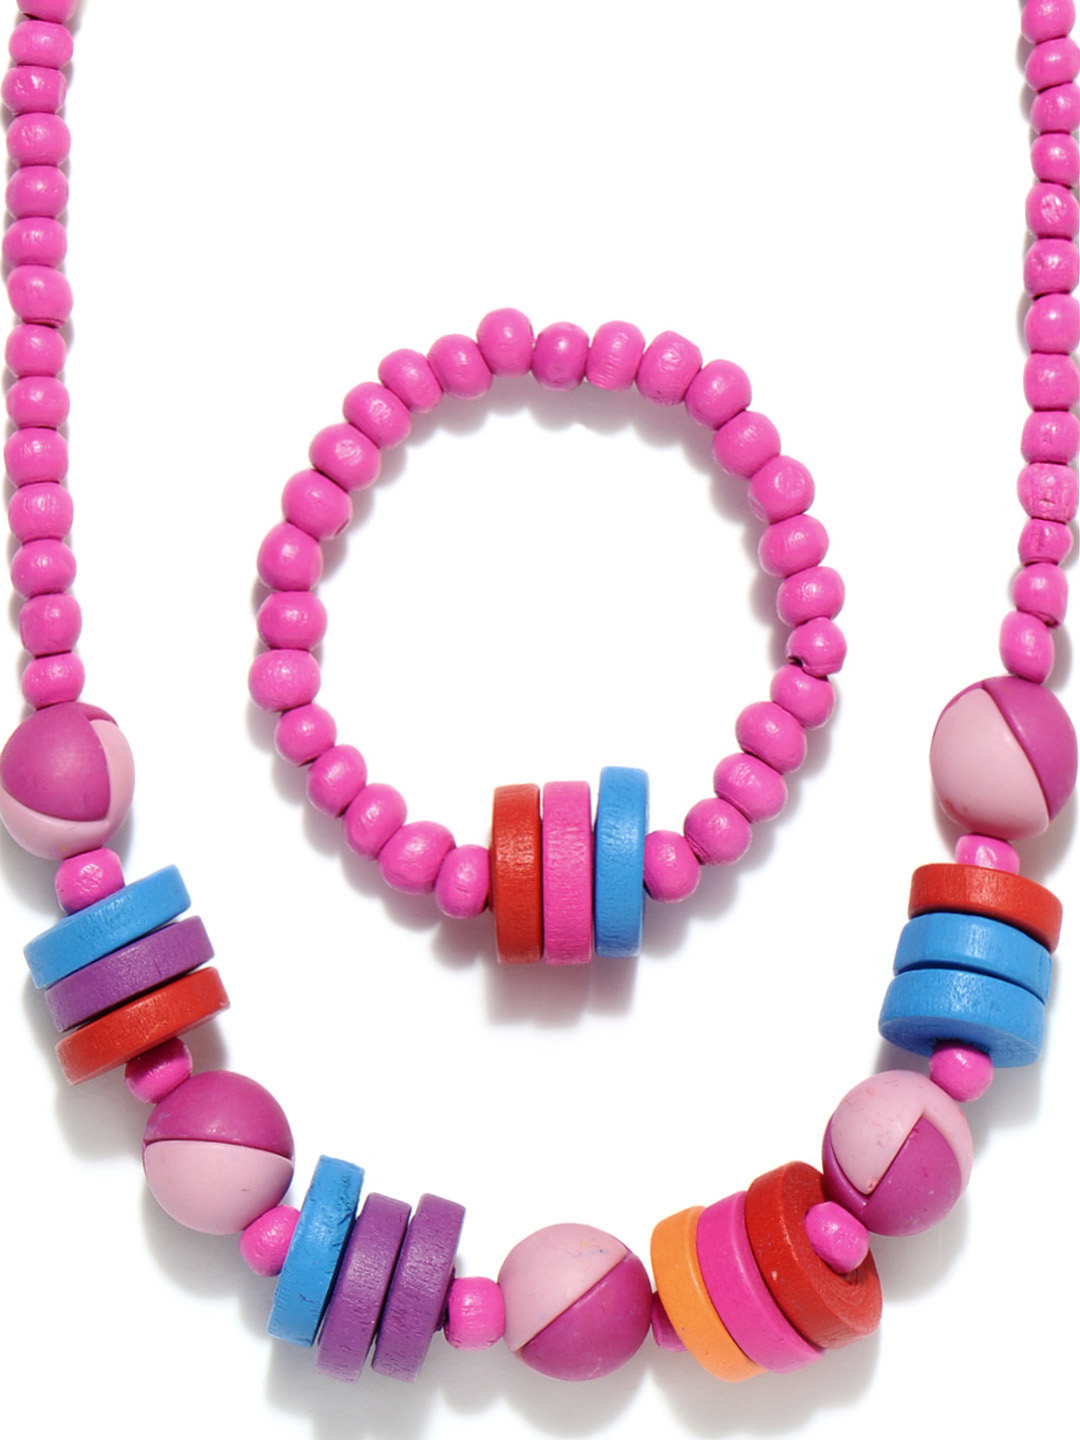 مجموعة رائعة من اكسسوارات البنات 2014 accessories for girls 181